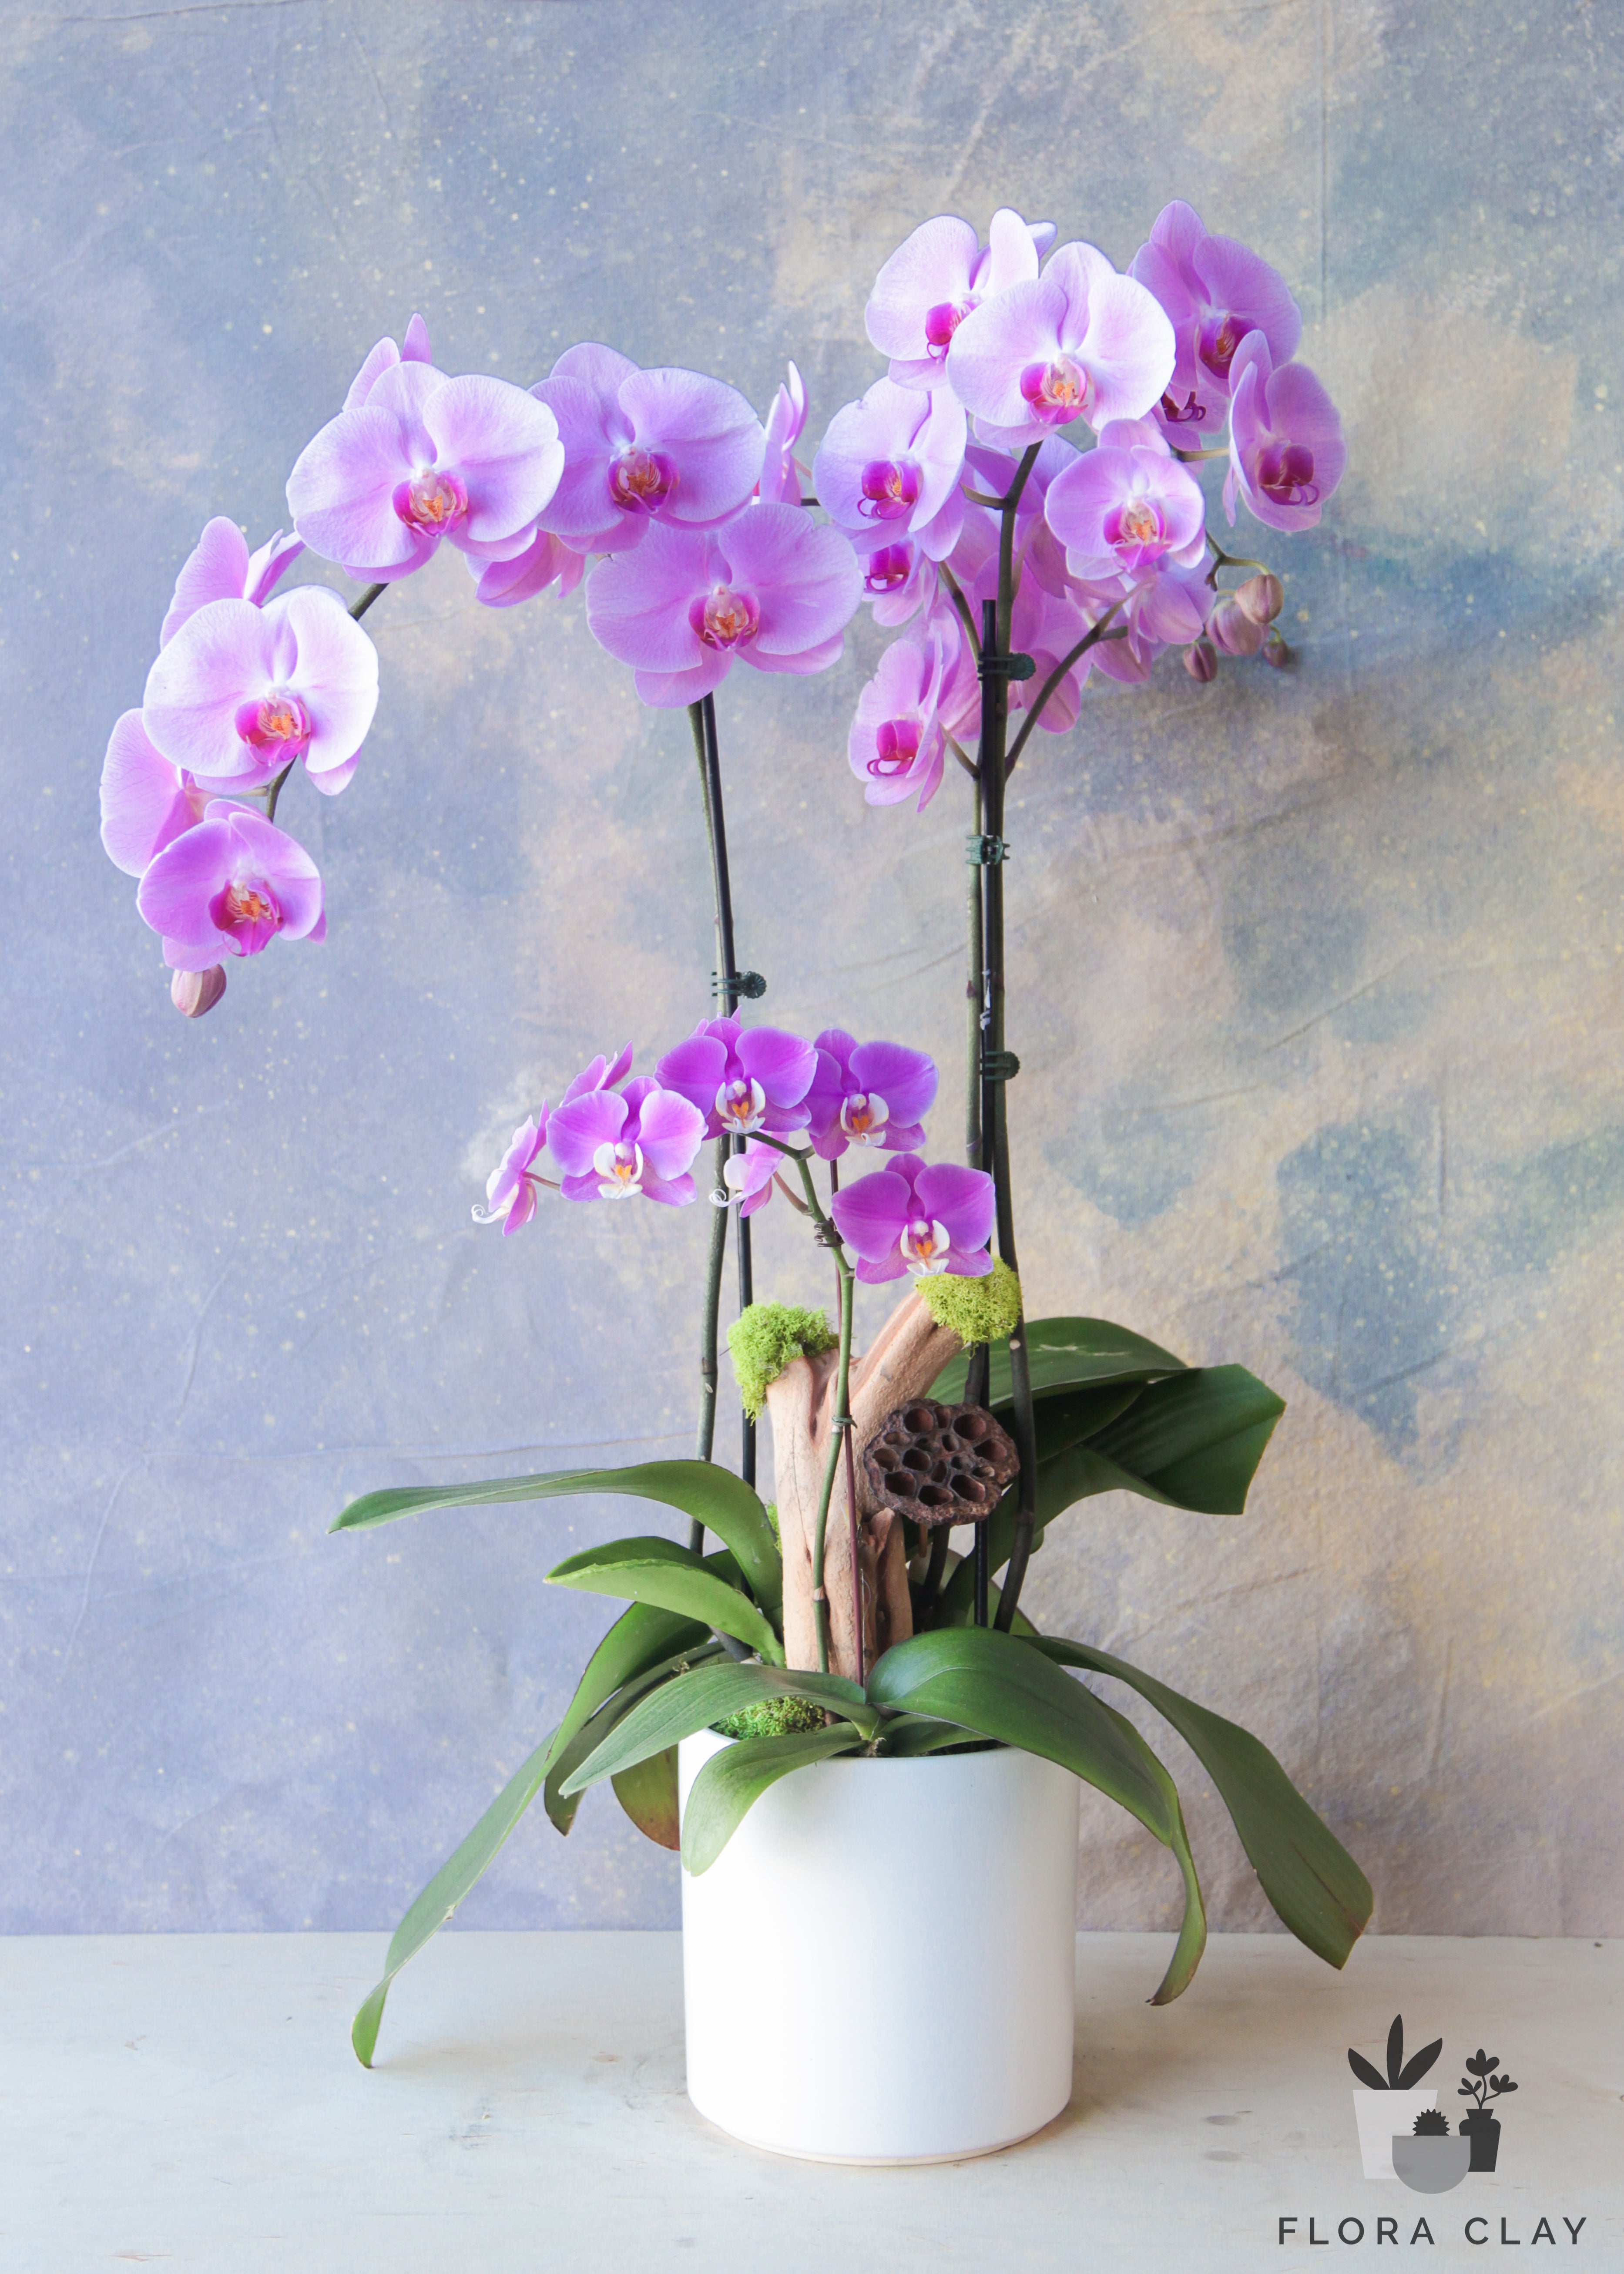 Virgo-Orchid-Arrangement-Floraclay1.jpg